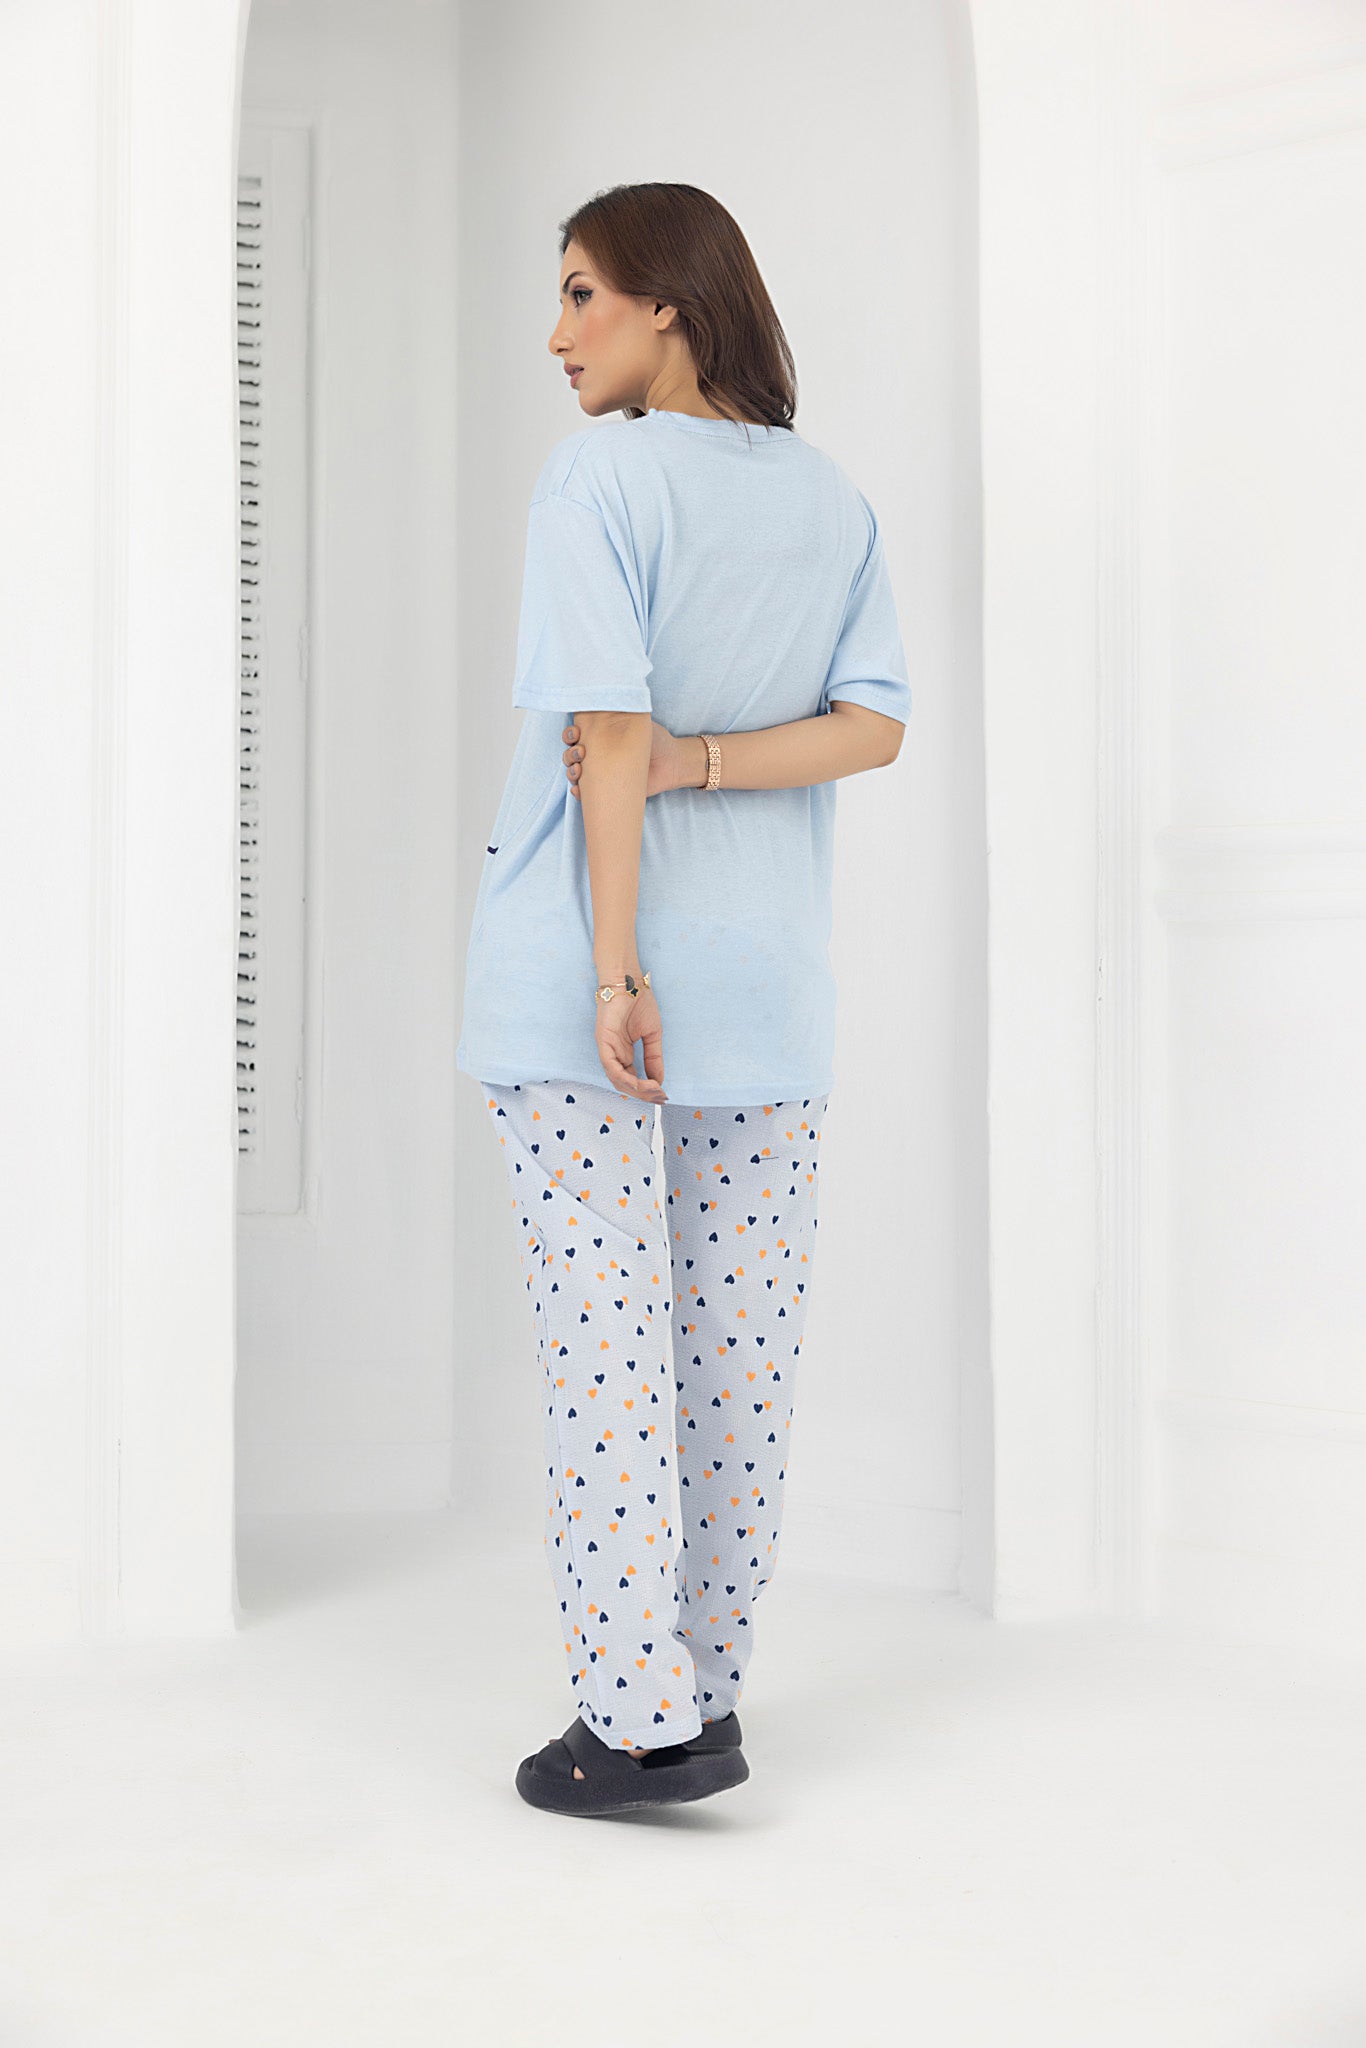 Nighty night Jersey and Pyjama set (S.Blue)